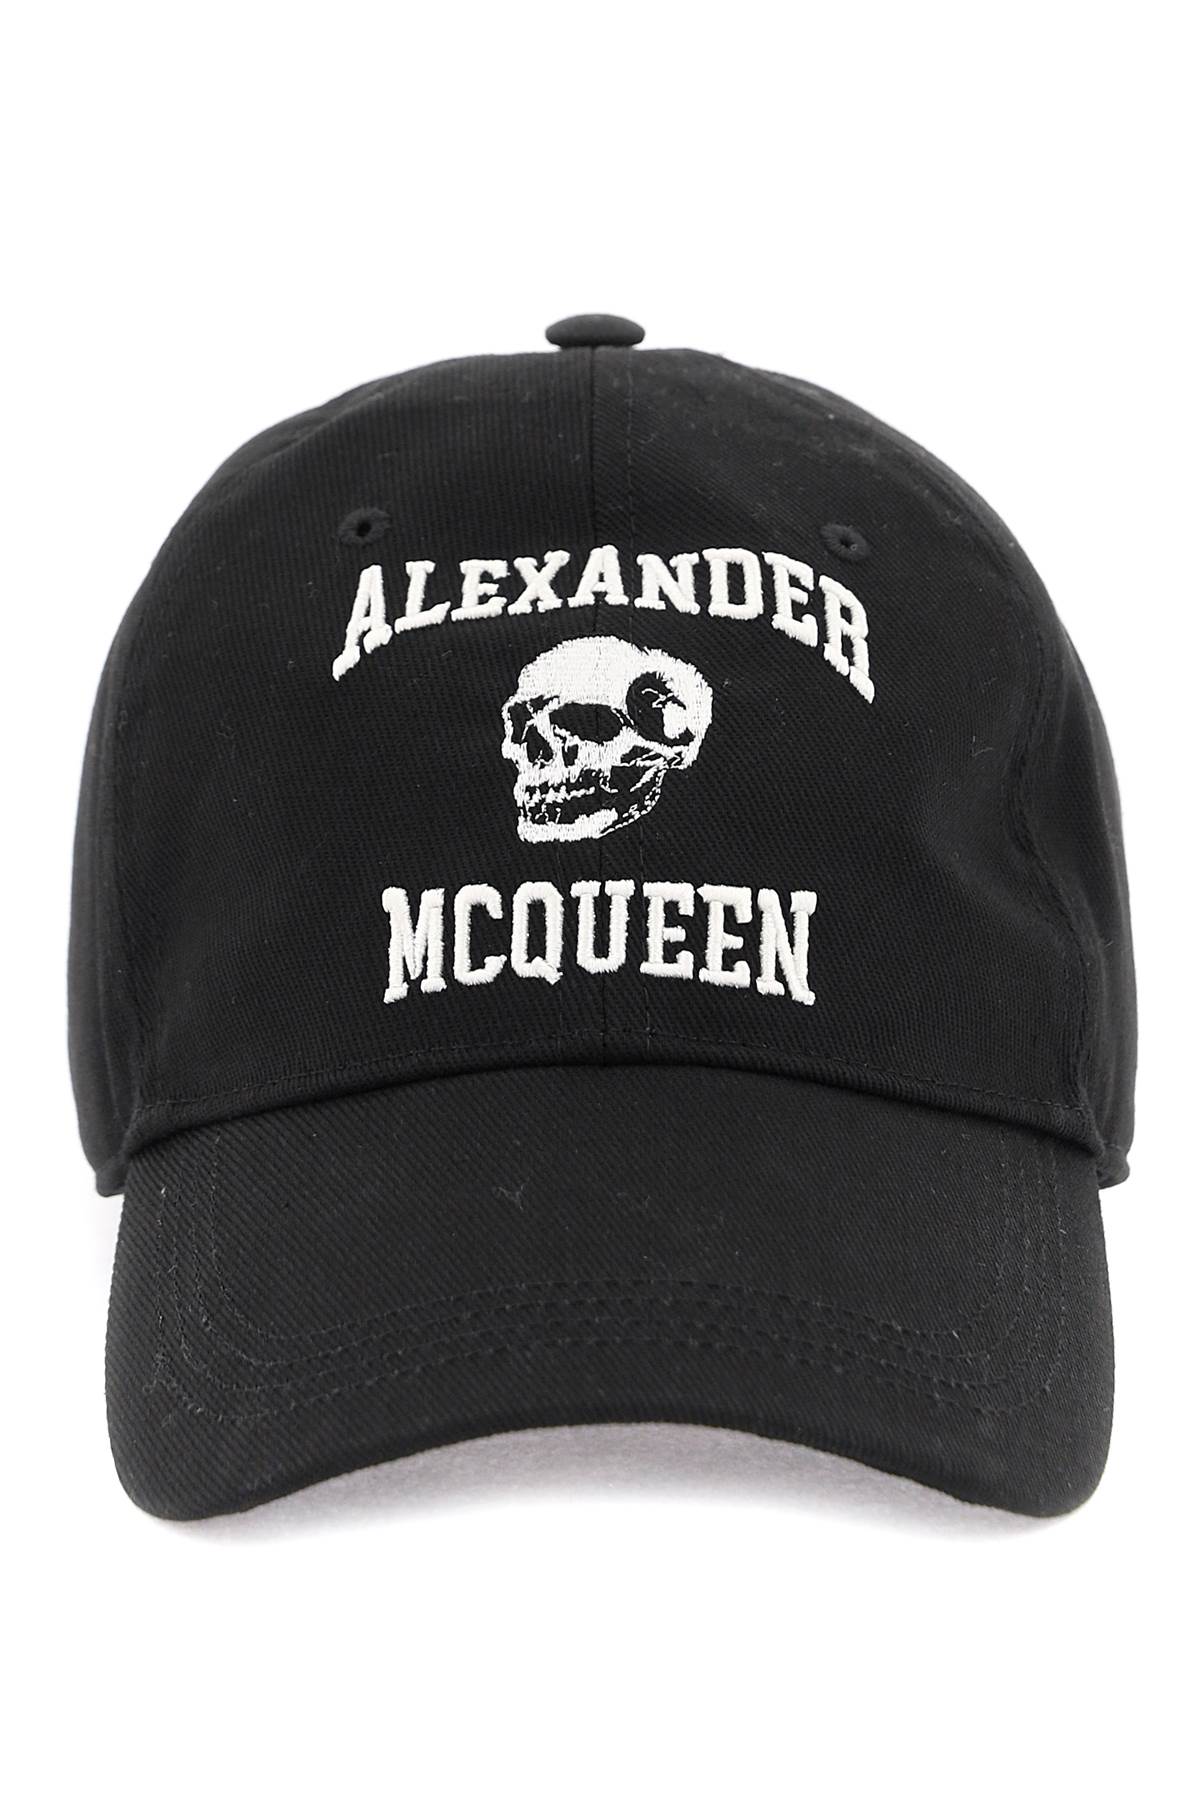 Alexander mcqueen embroidered logo baseball cap-0